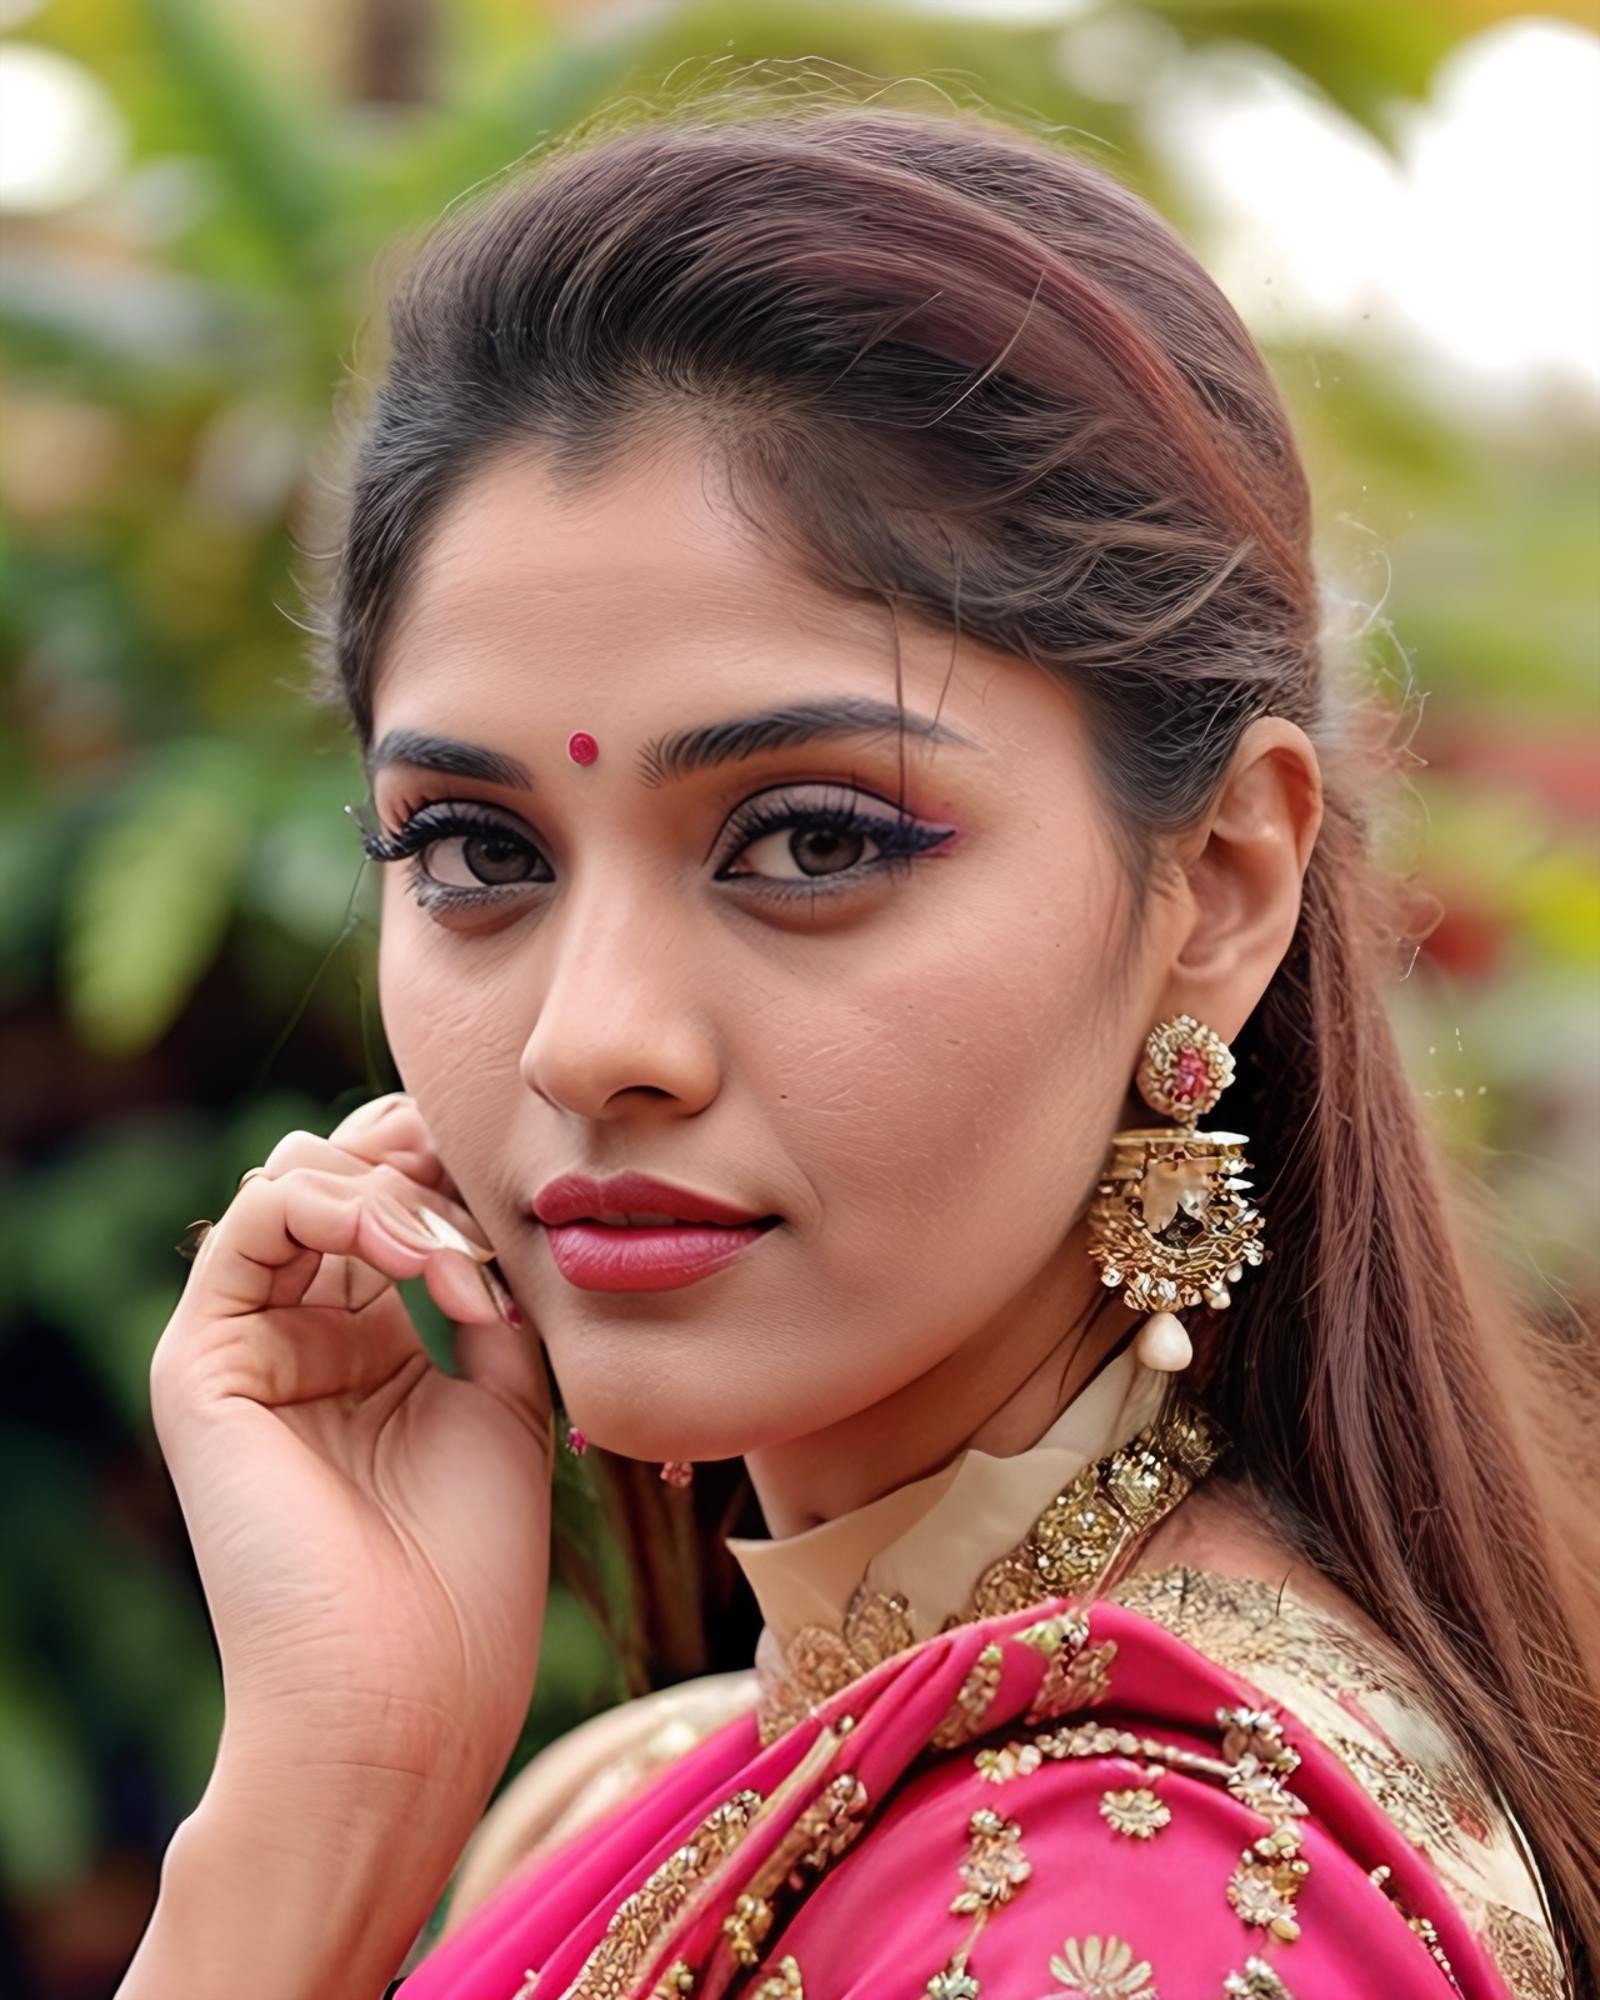 Surabhi Puranik - Indian Actress (SD 1.5) image by Desi_Cafe